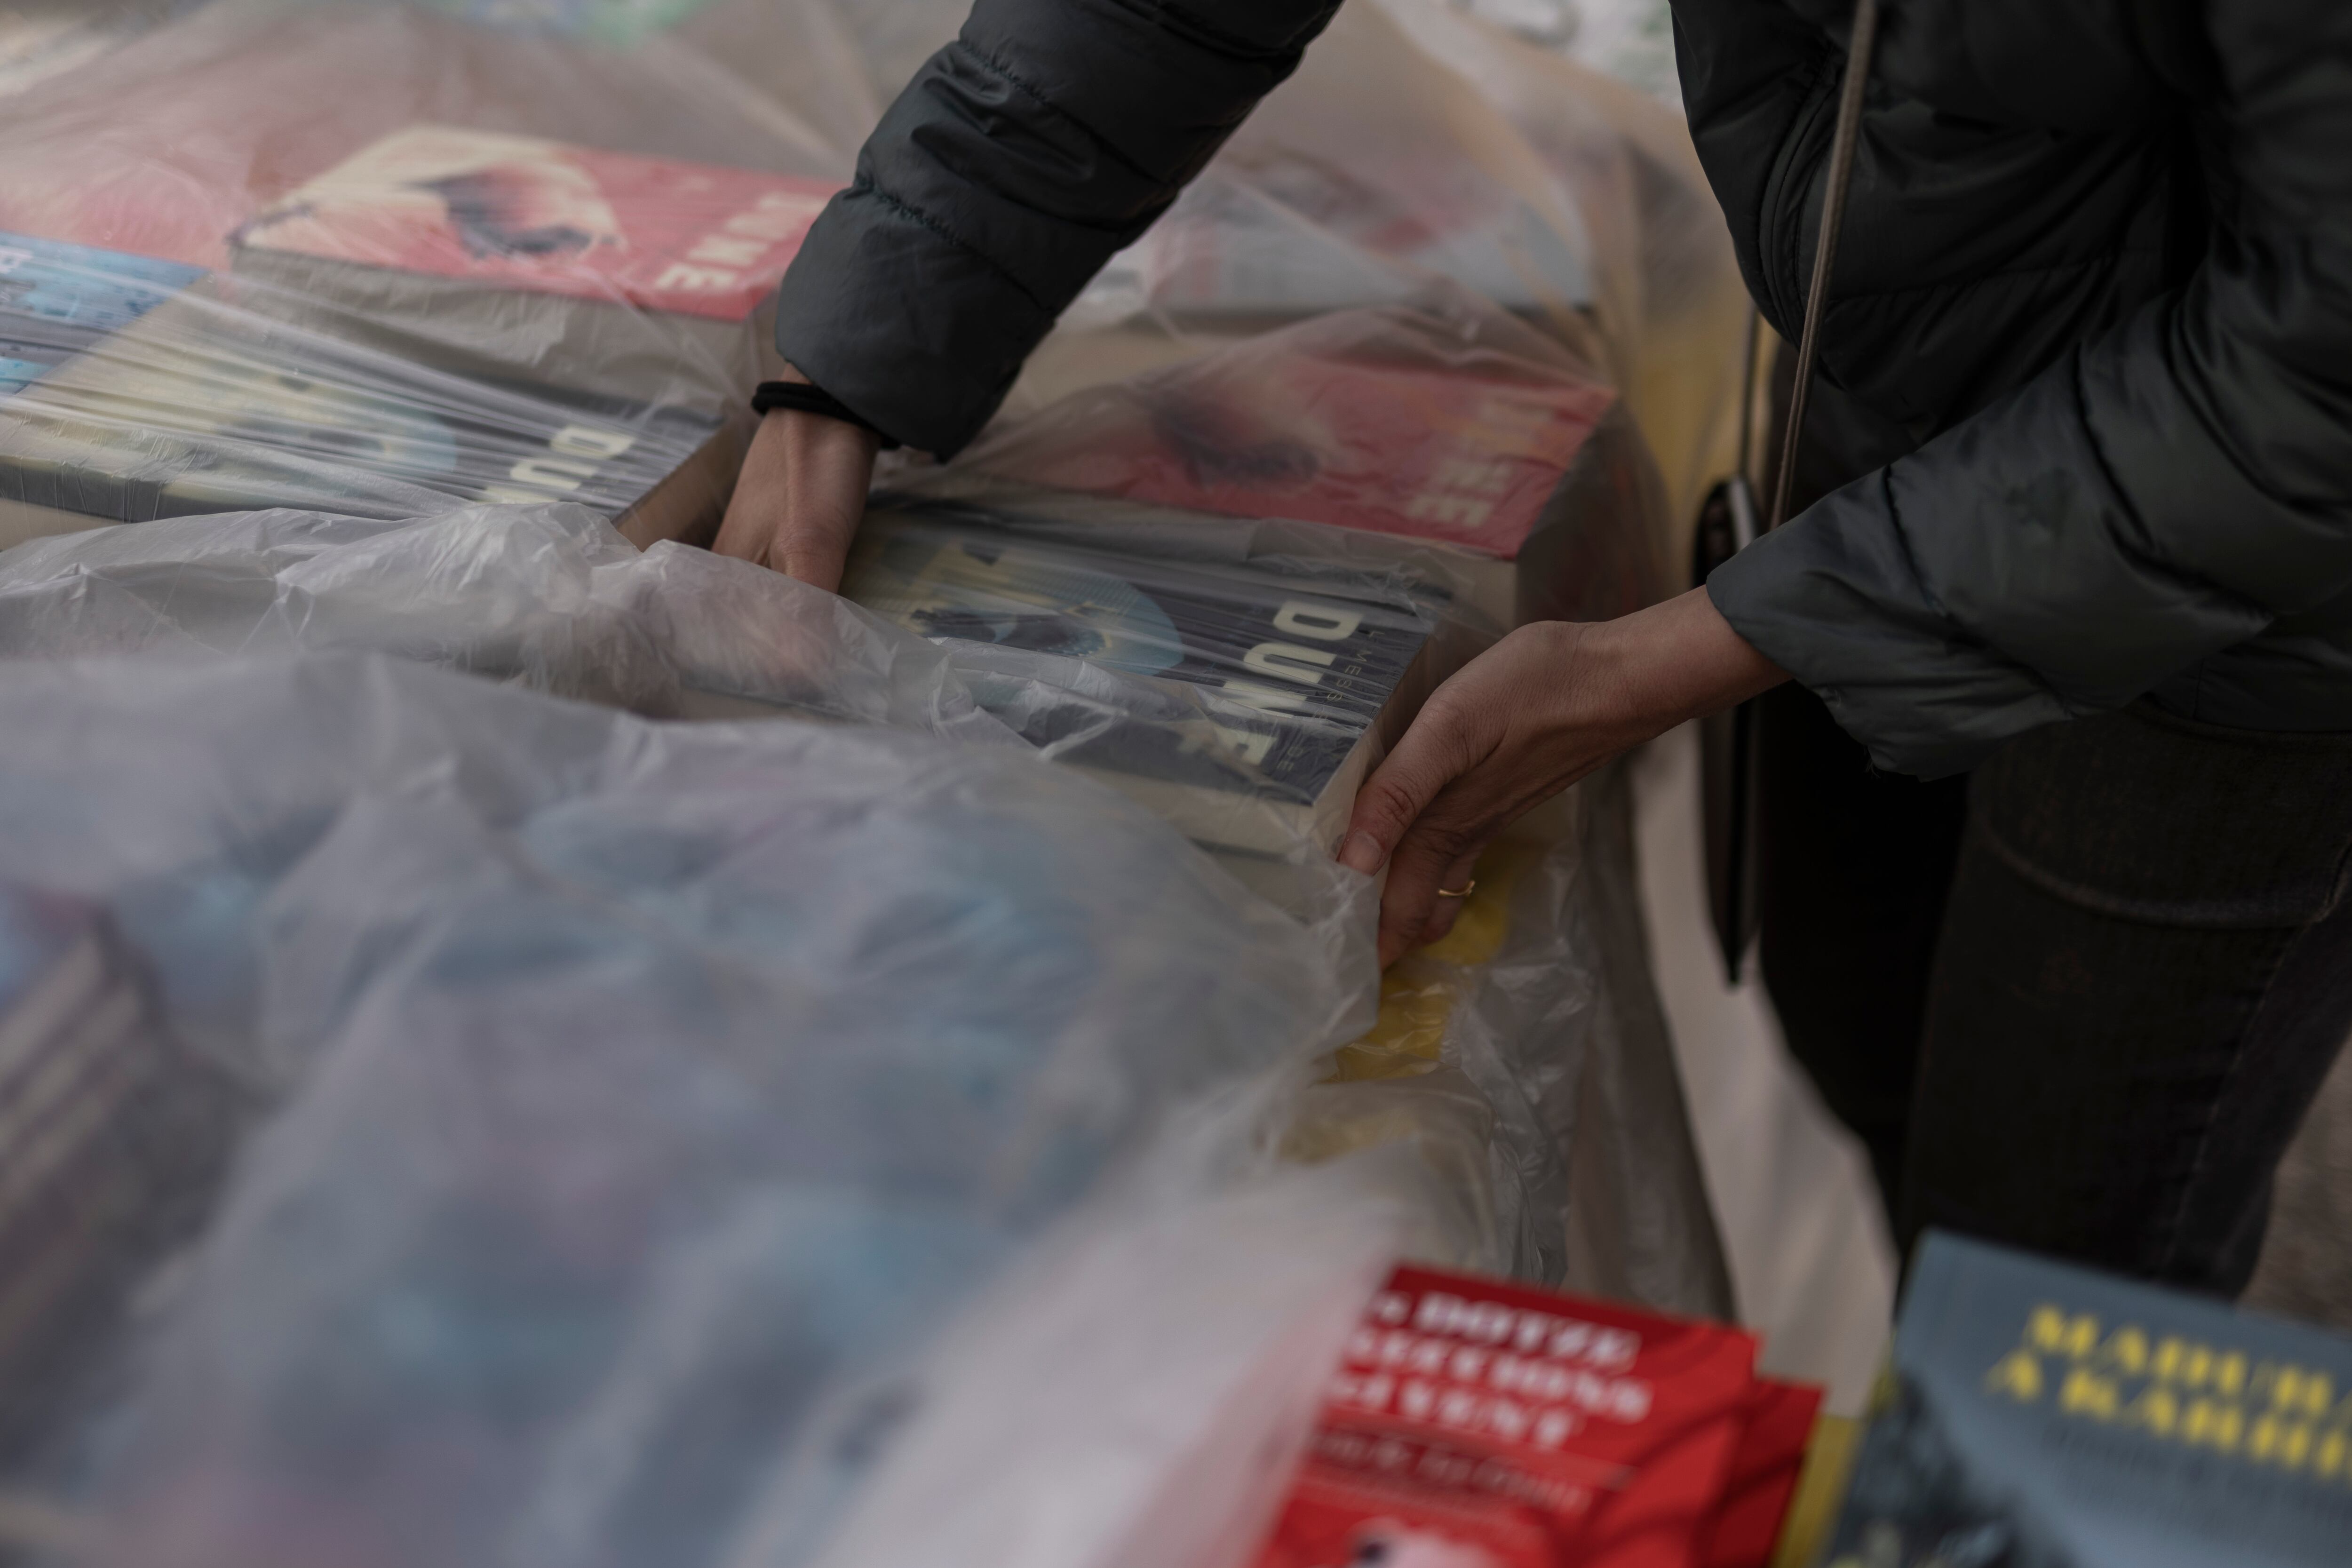 Una persona cubre los libros con plásticos para evitar que se mojen a causa de la lluvia, este martes en Barcelona.